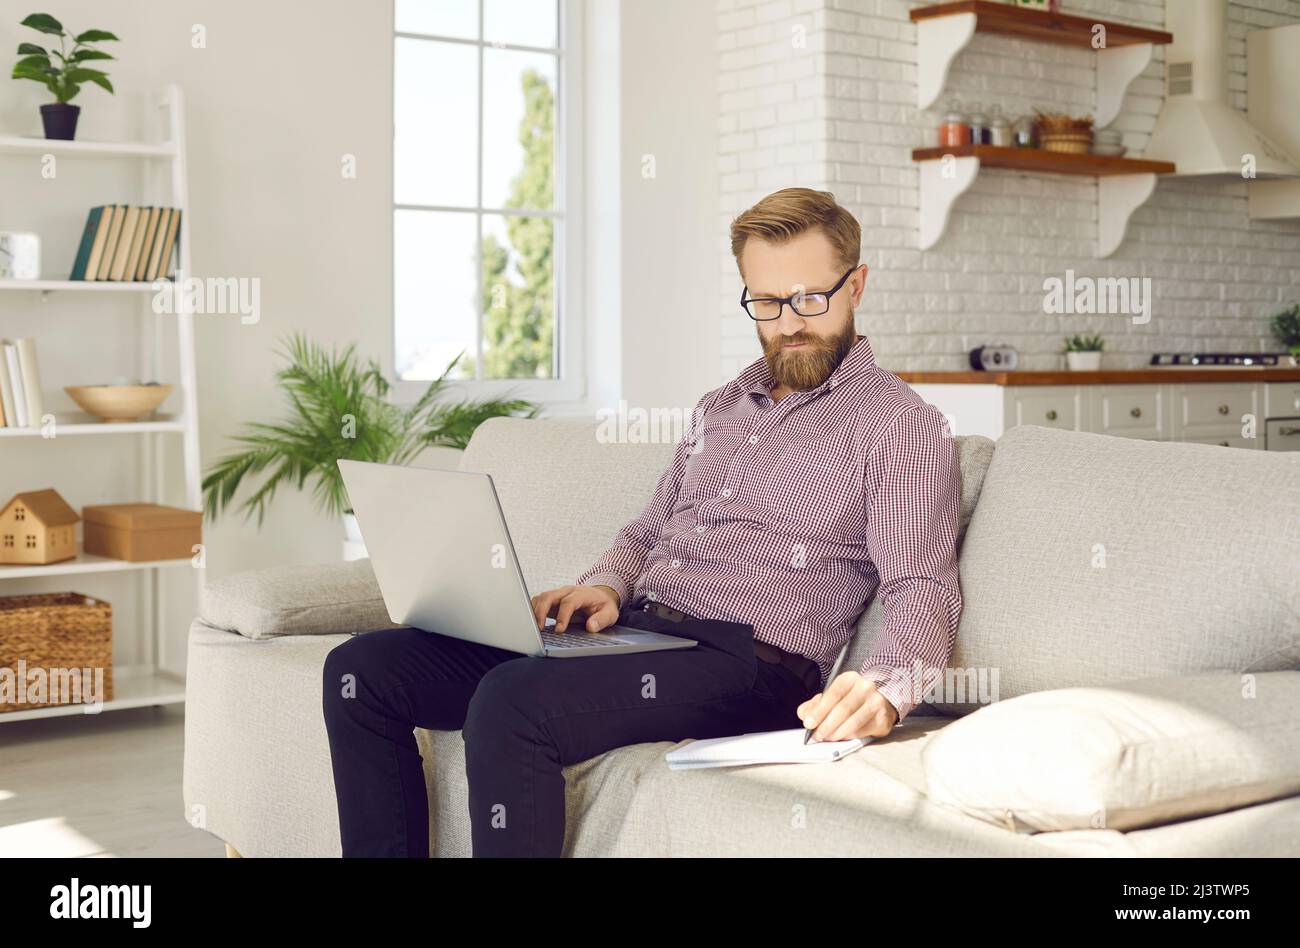 Un homme de race blanche travaille en ligne sur un ordinateur portable à la maison Banque D'Images